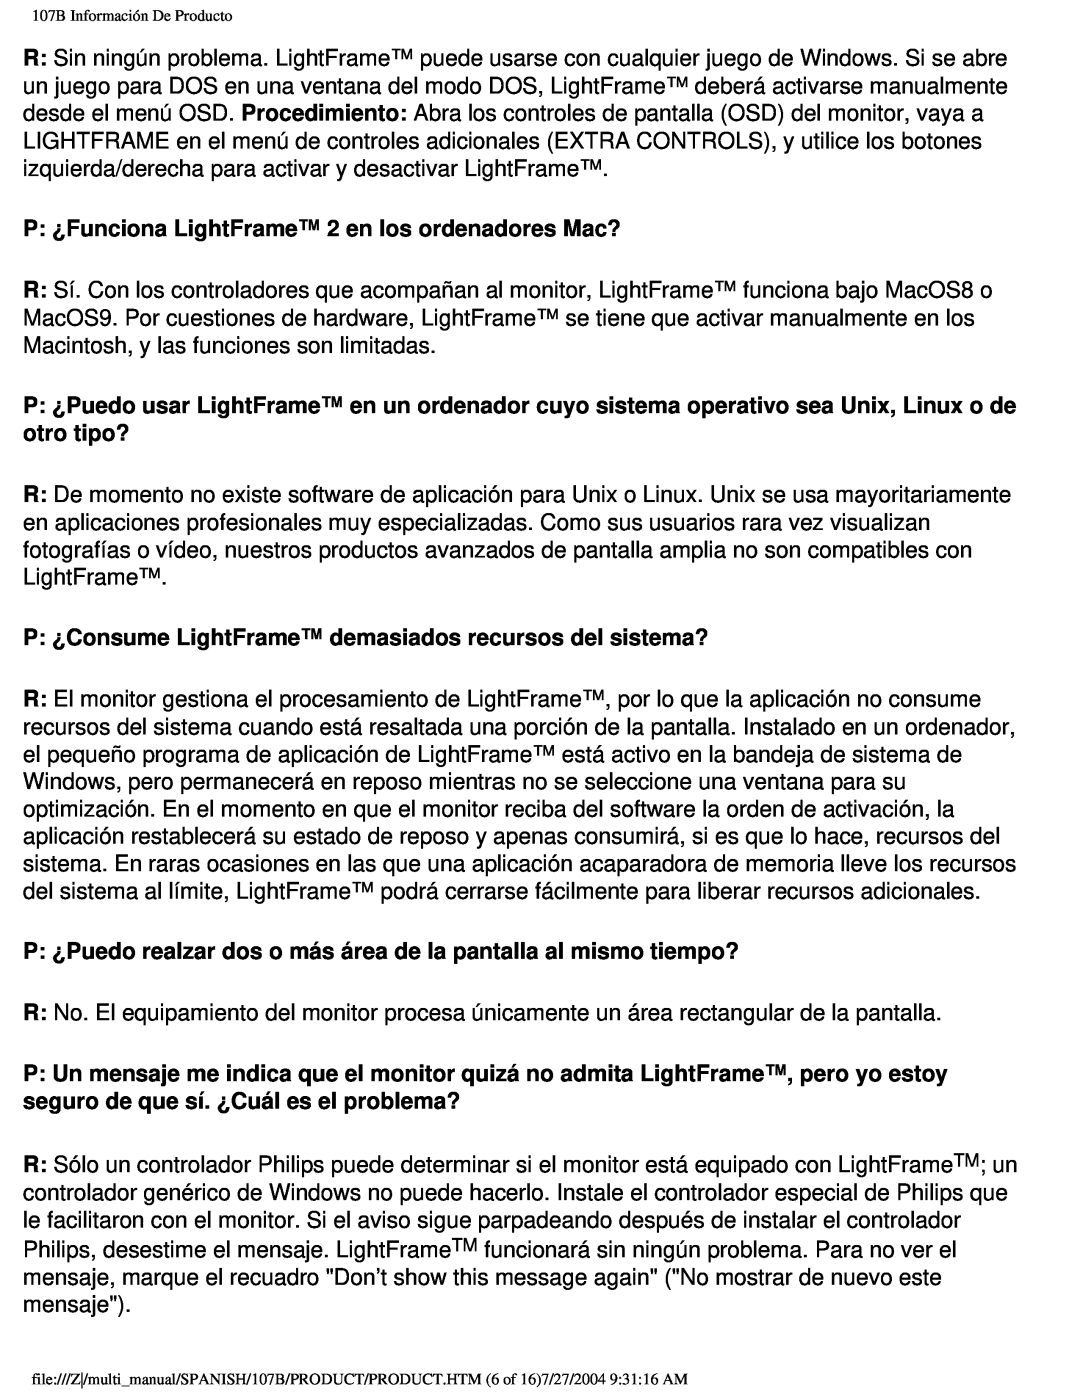 Philips 107B P ¿Funciona LightFrame 2 en los ordenadores Mac?, P ¿Consume LightFrame demasiados recursos del sistema? 